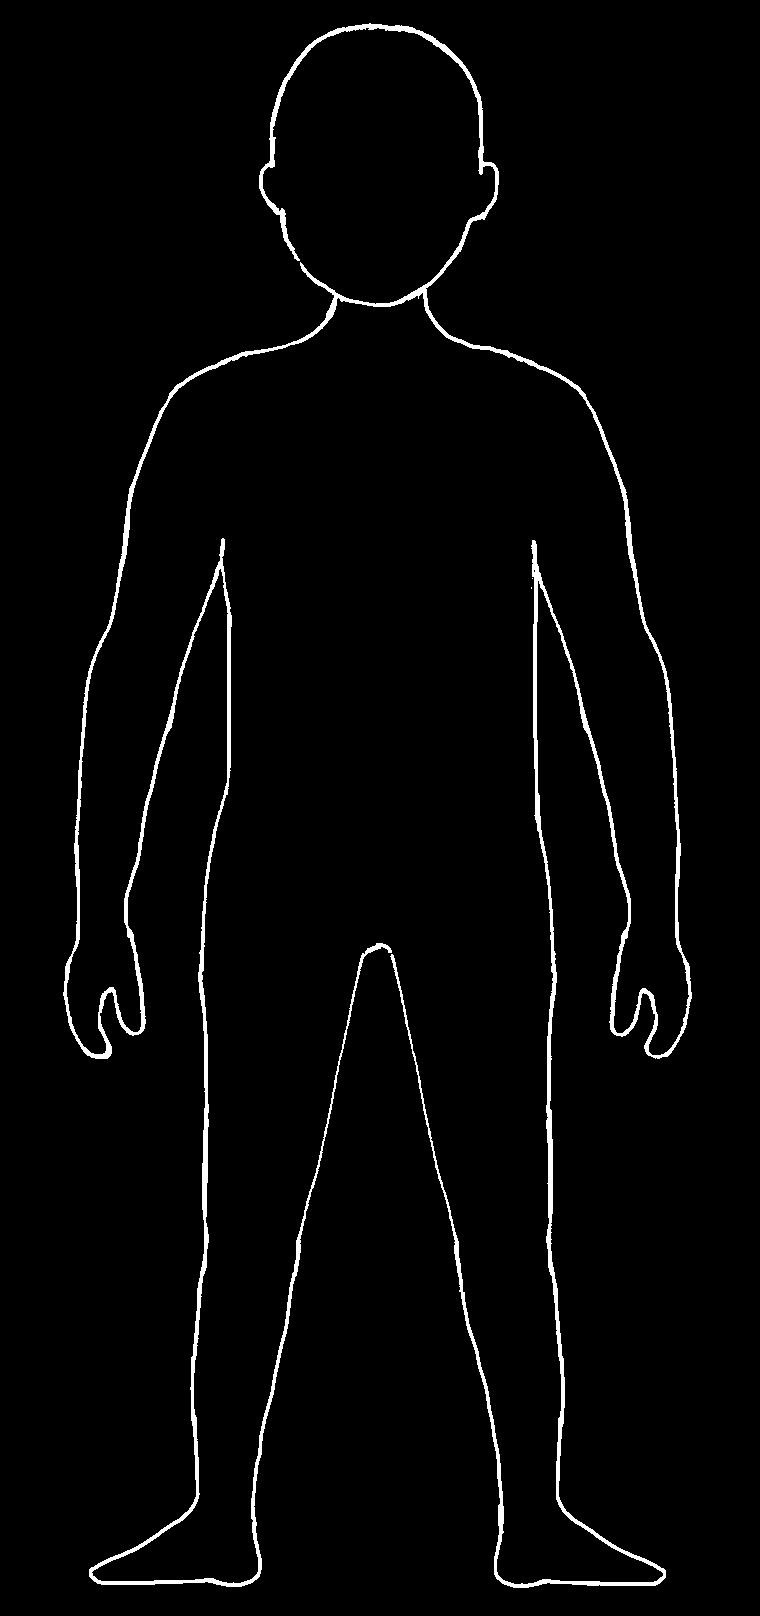 1 Male das Bild so an: Körperteil Kopf Rumpf (Hals, Brust, Bauch) Gliedmaßen (Arme, Beine) Farbe